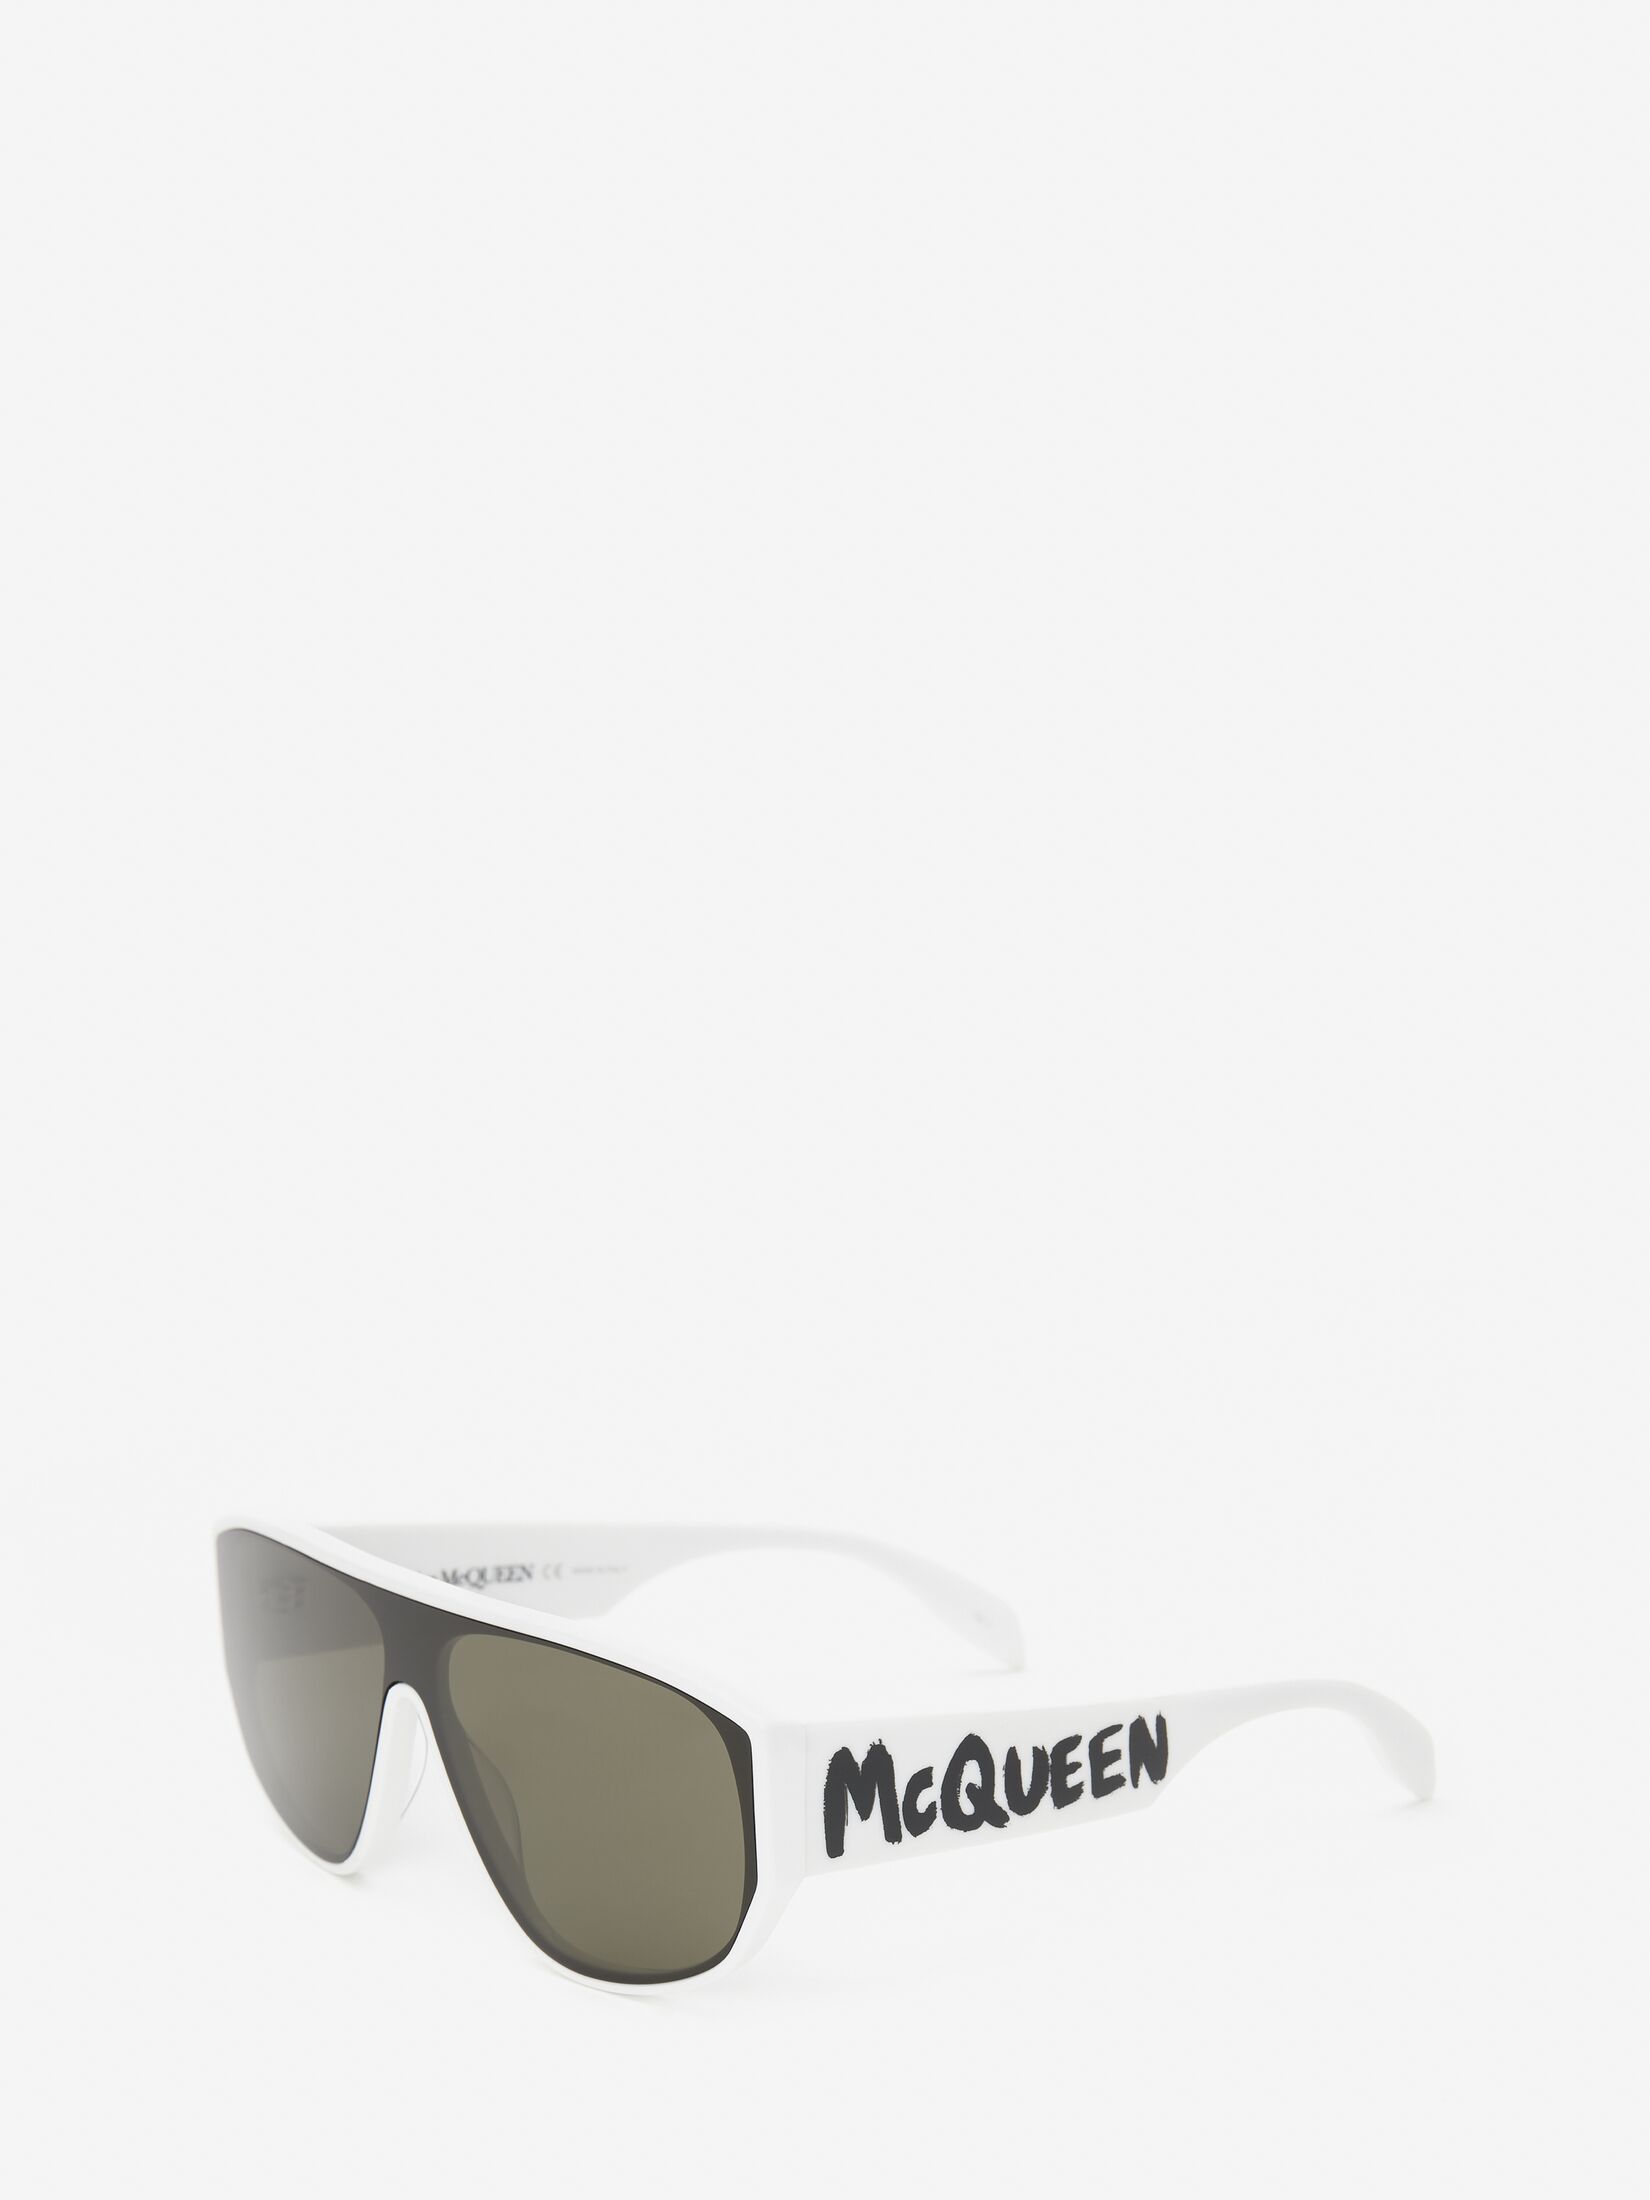 McQueen Graffiti Mask Sunglasses